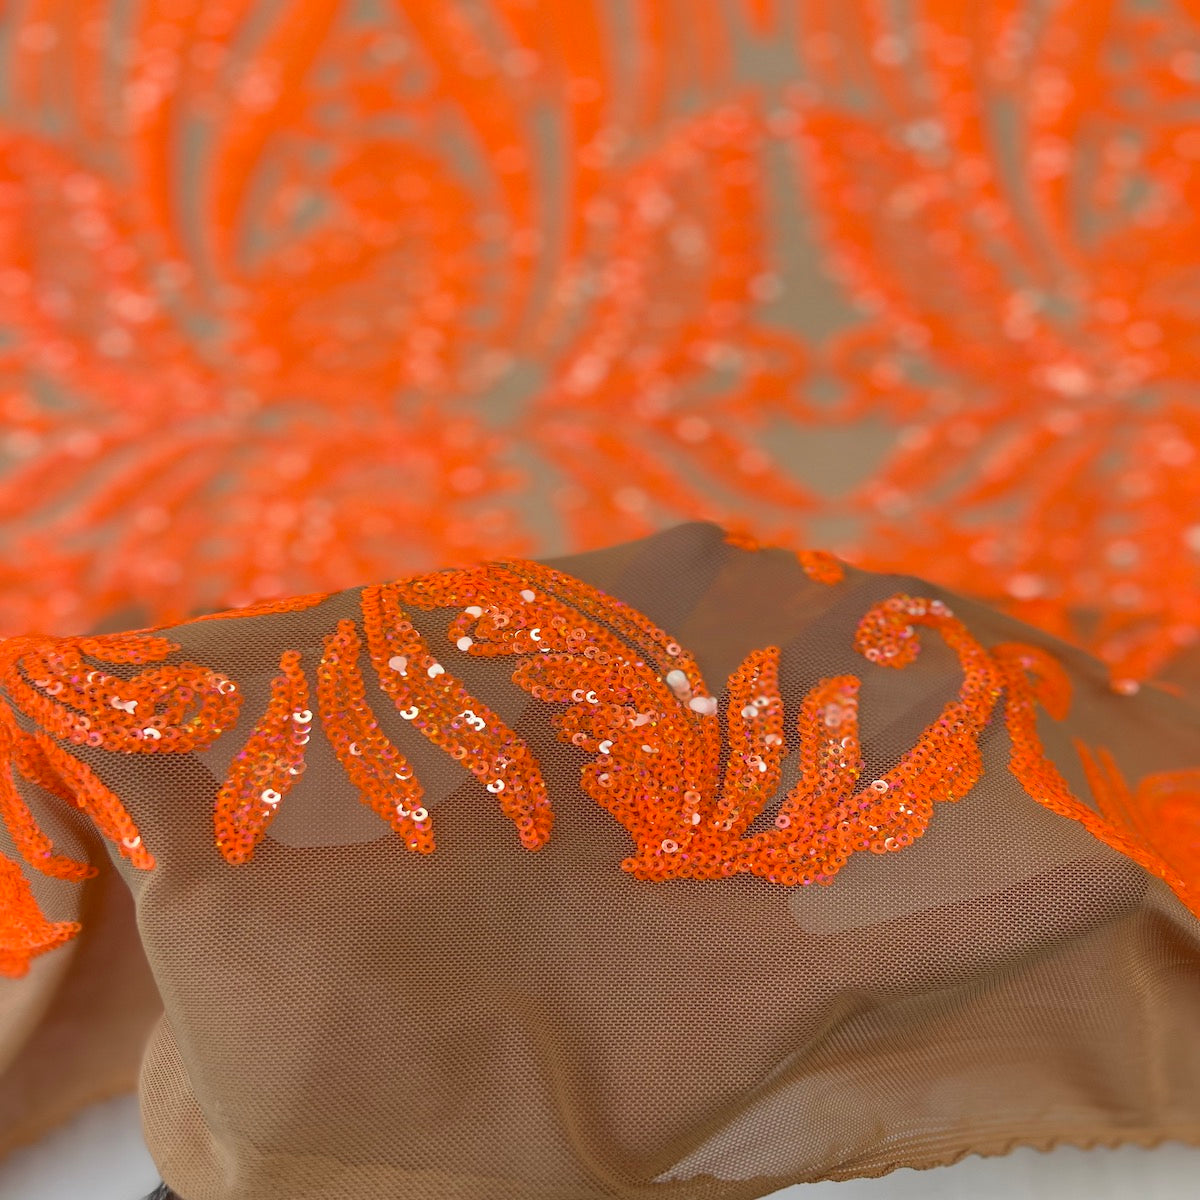 Evening Sequins Dress Fabric, Fabric Orange Sequins